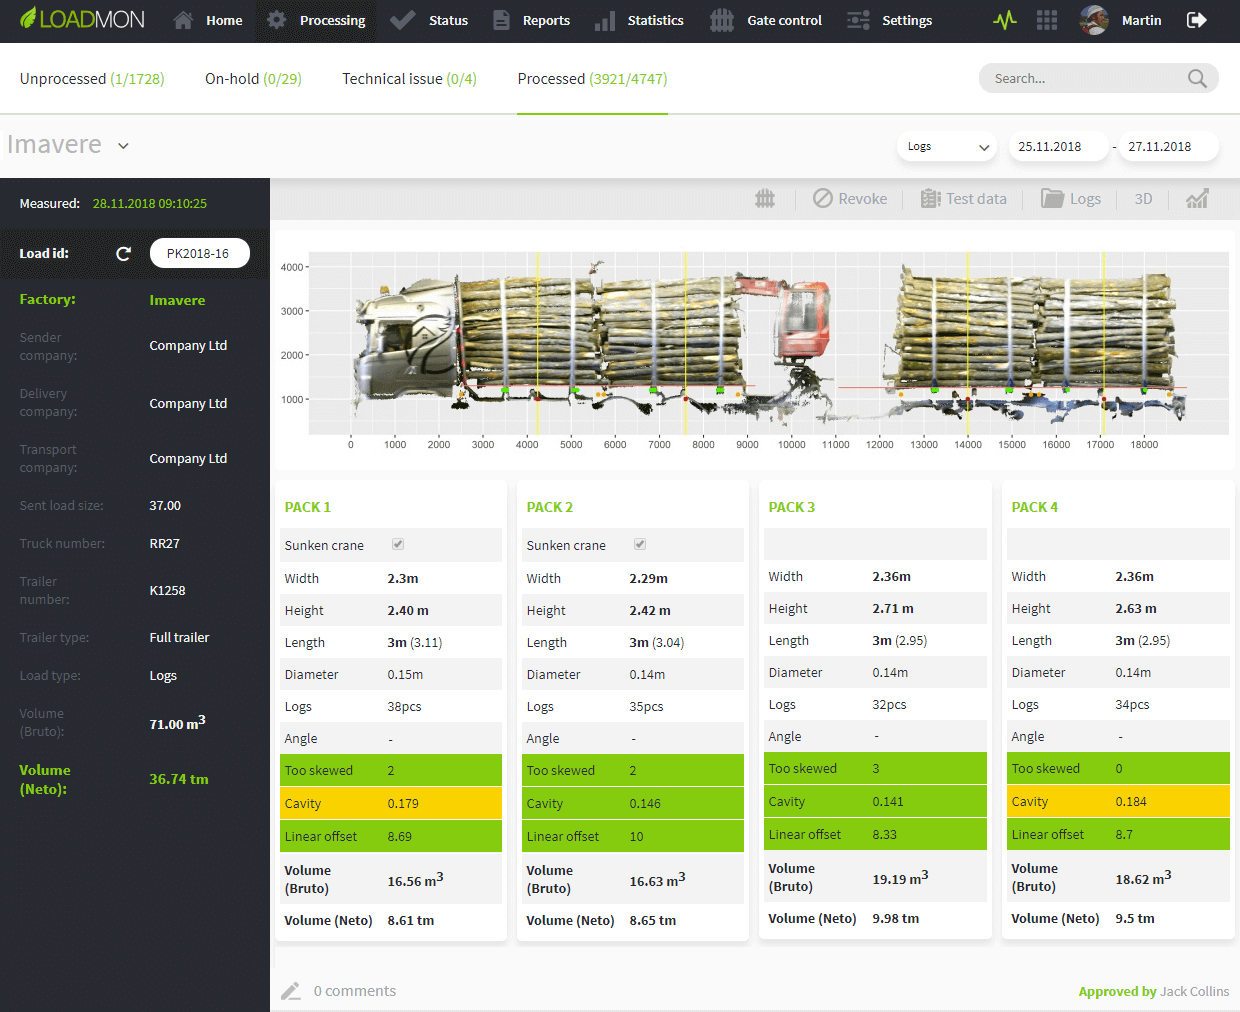 LoadMon web portal - truck with logs